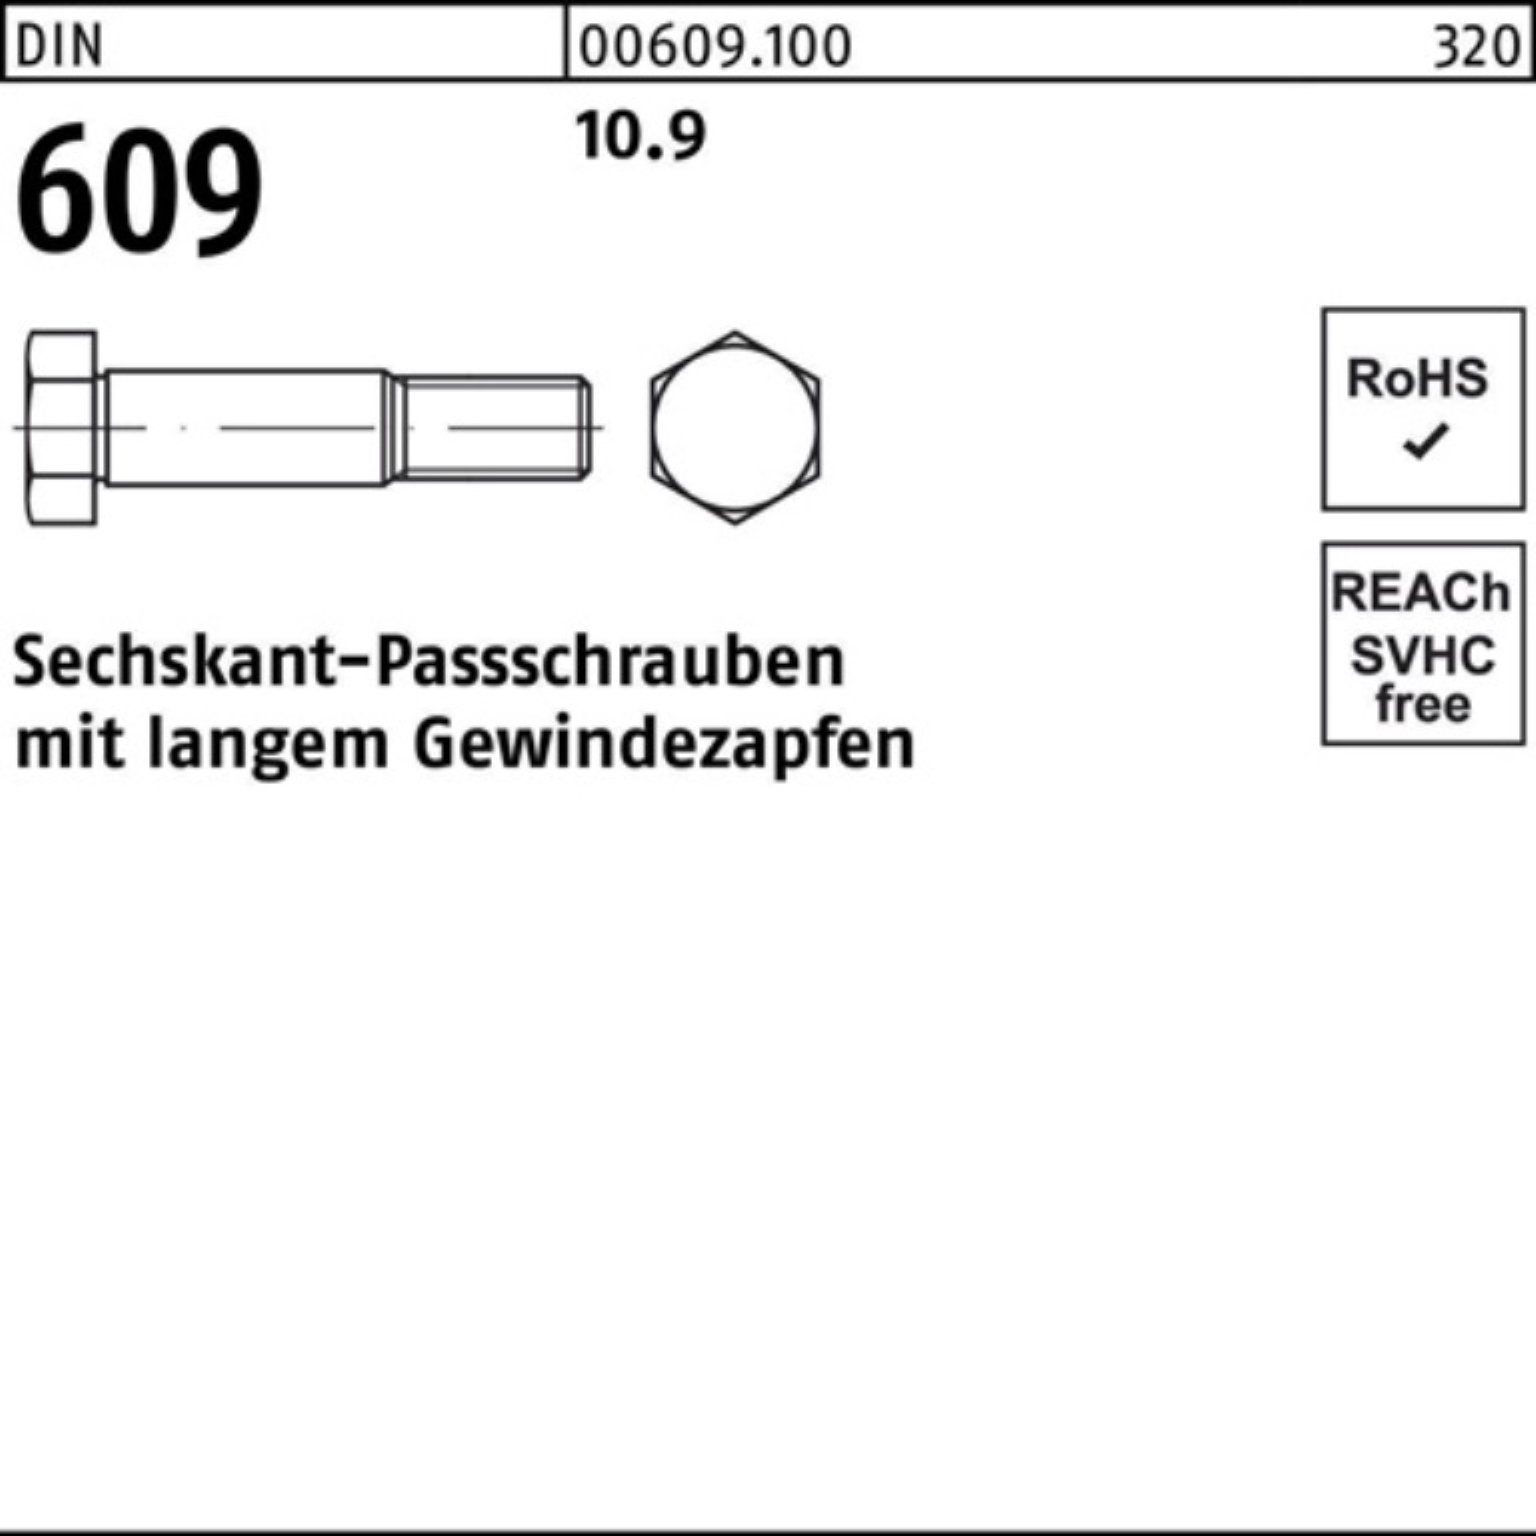 Reyher Schraube 100er Pack 609 40 DIN langem Gewindezapfen Sechskantpassschraube M16x